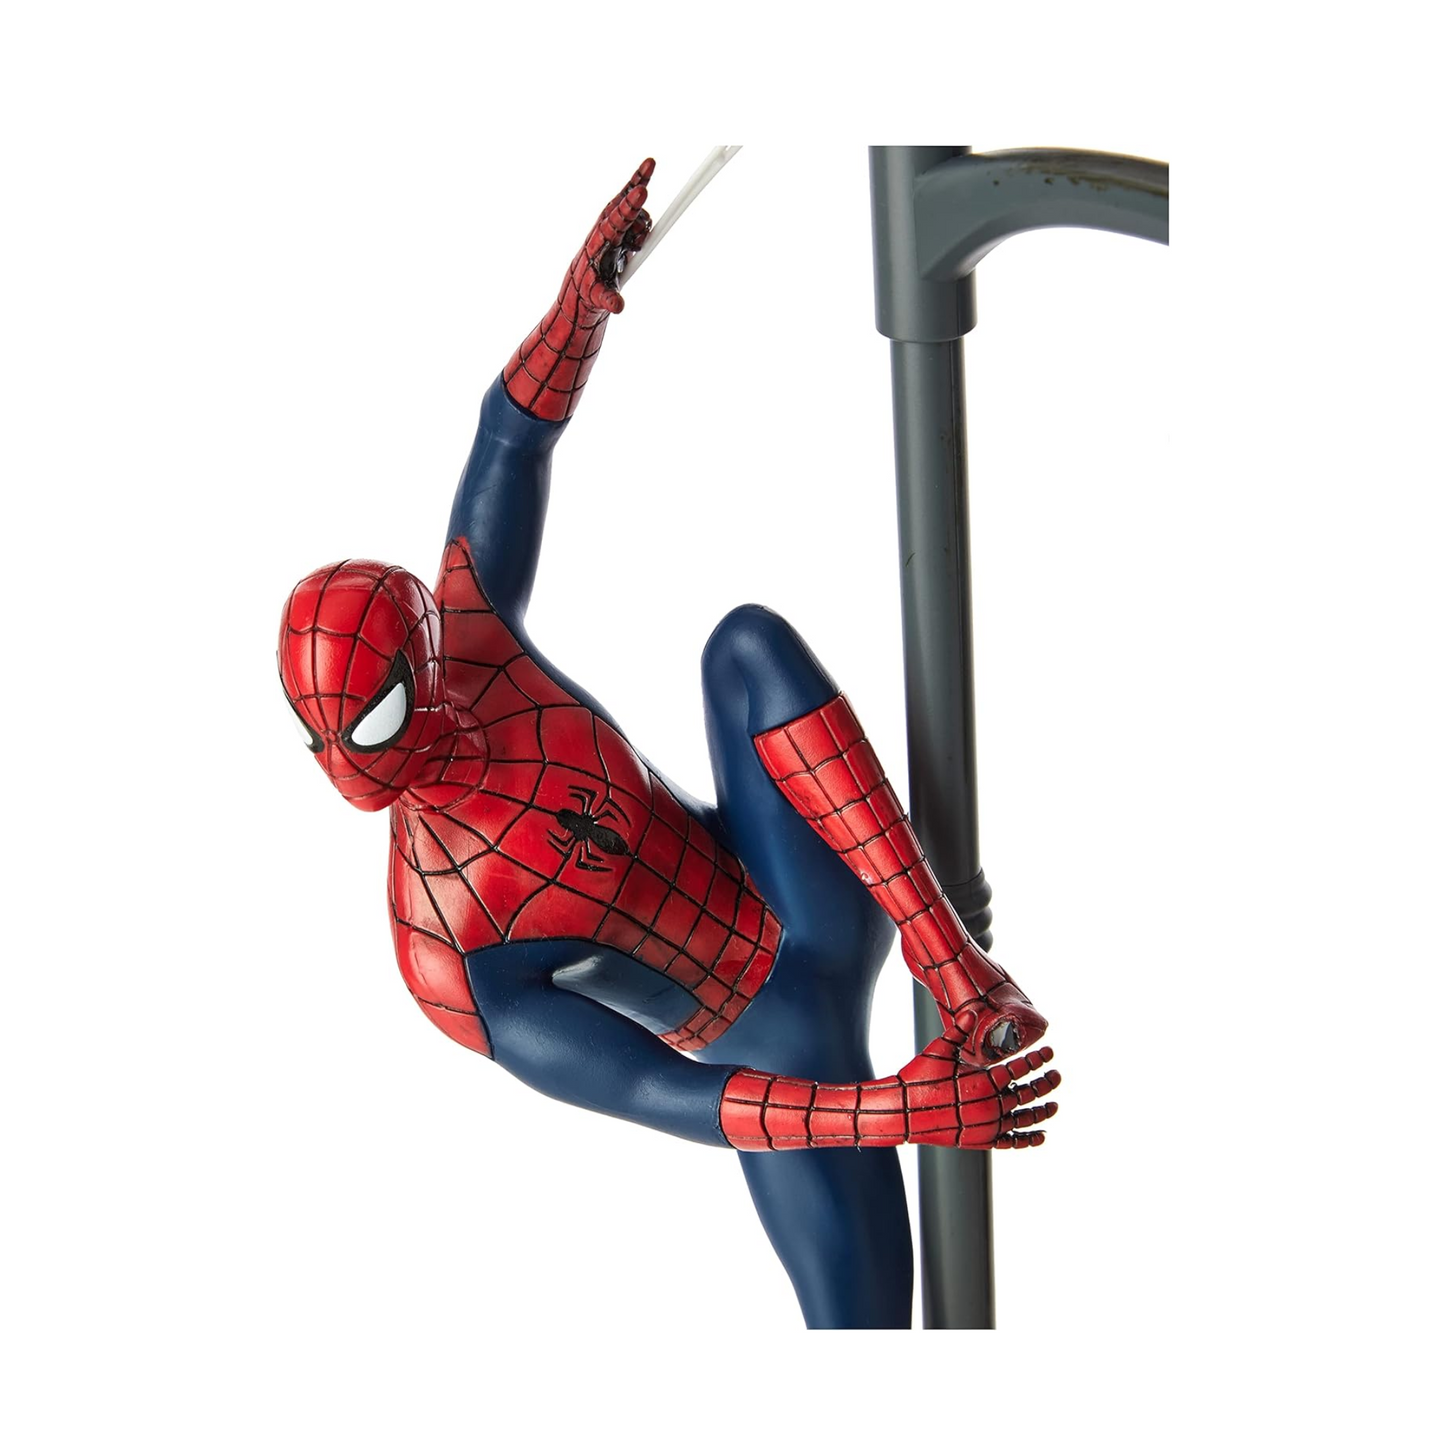 Spiderman desktop lamp - Paladone